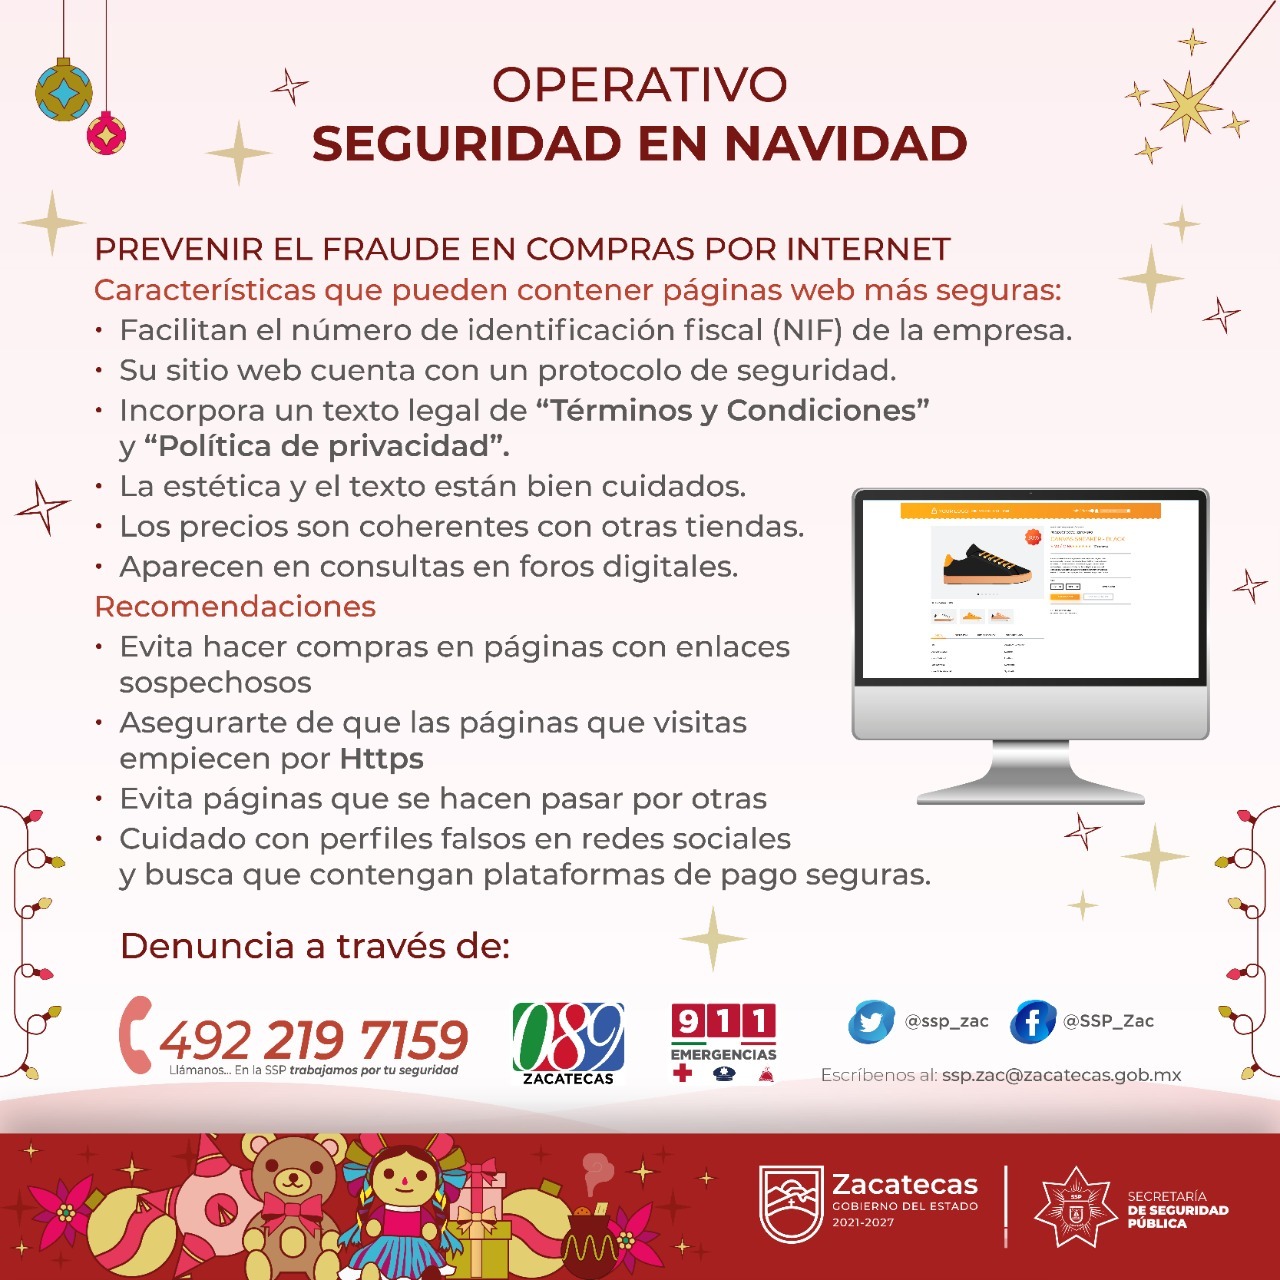 Advierte Secretaría de Seguridad Pública de Zacatecas sobre modalidad de fraude en compras por Internet